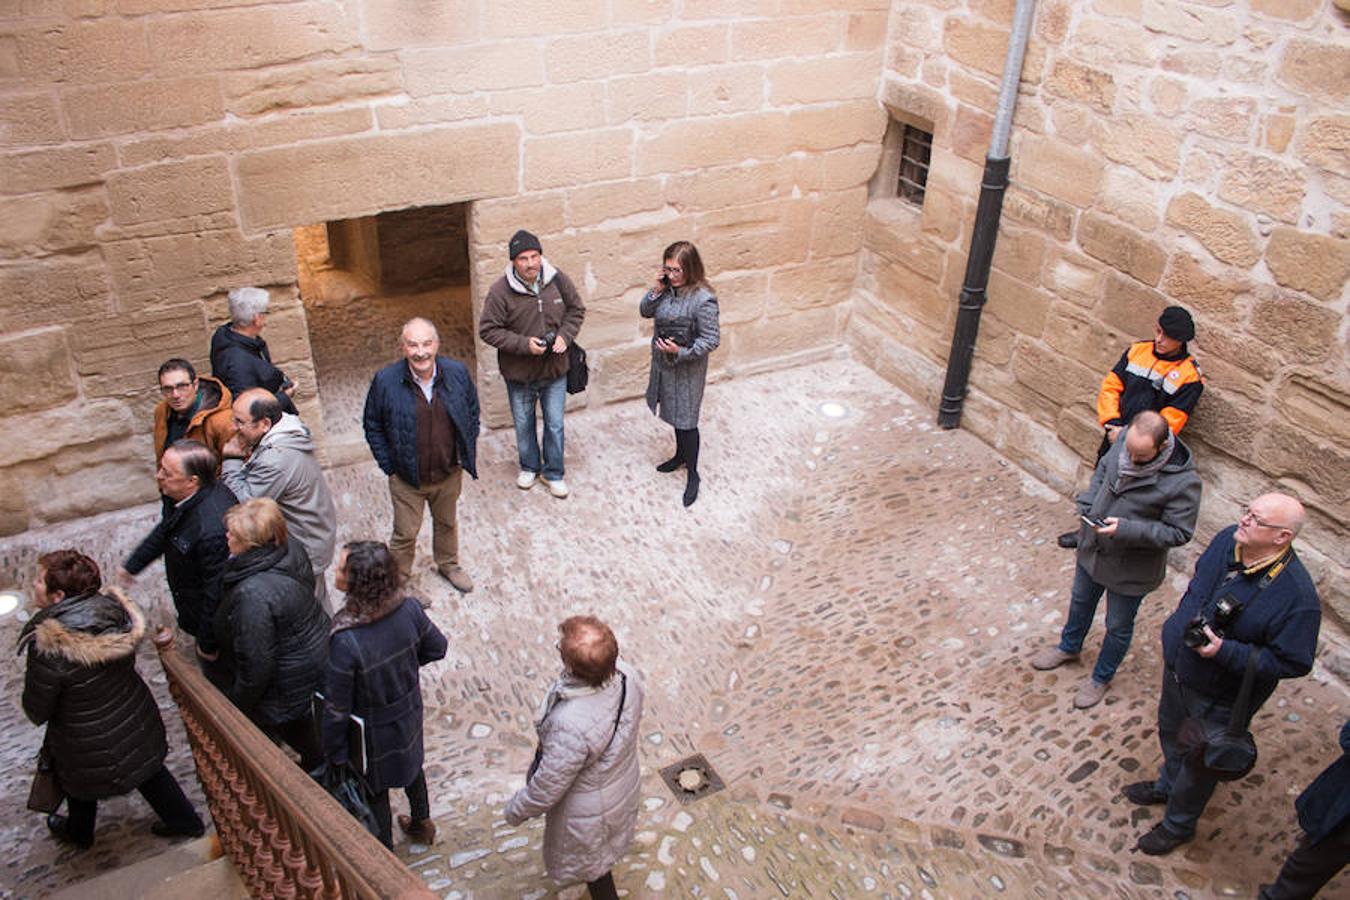 El presidente del Gobierno de La Rioja, José Ignacio Ceniceros, participa en la inauguración del edificio del Corregimiento, tras las obras de rehabilitación.